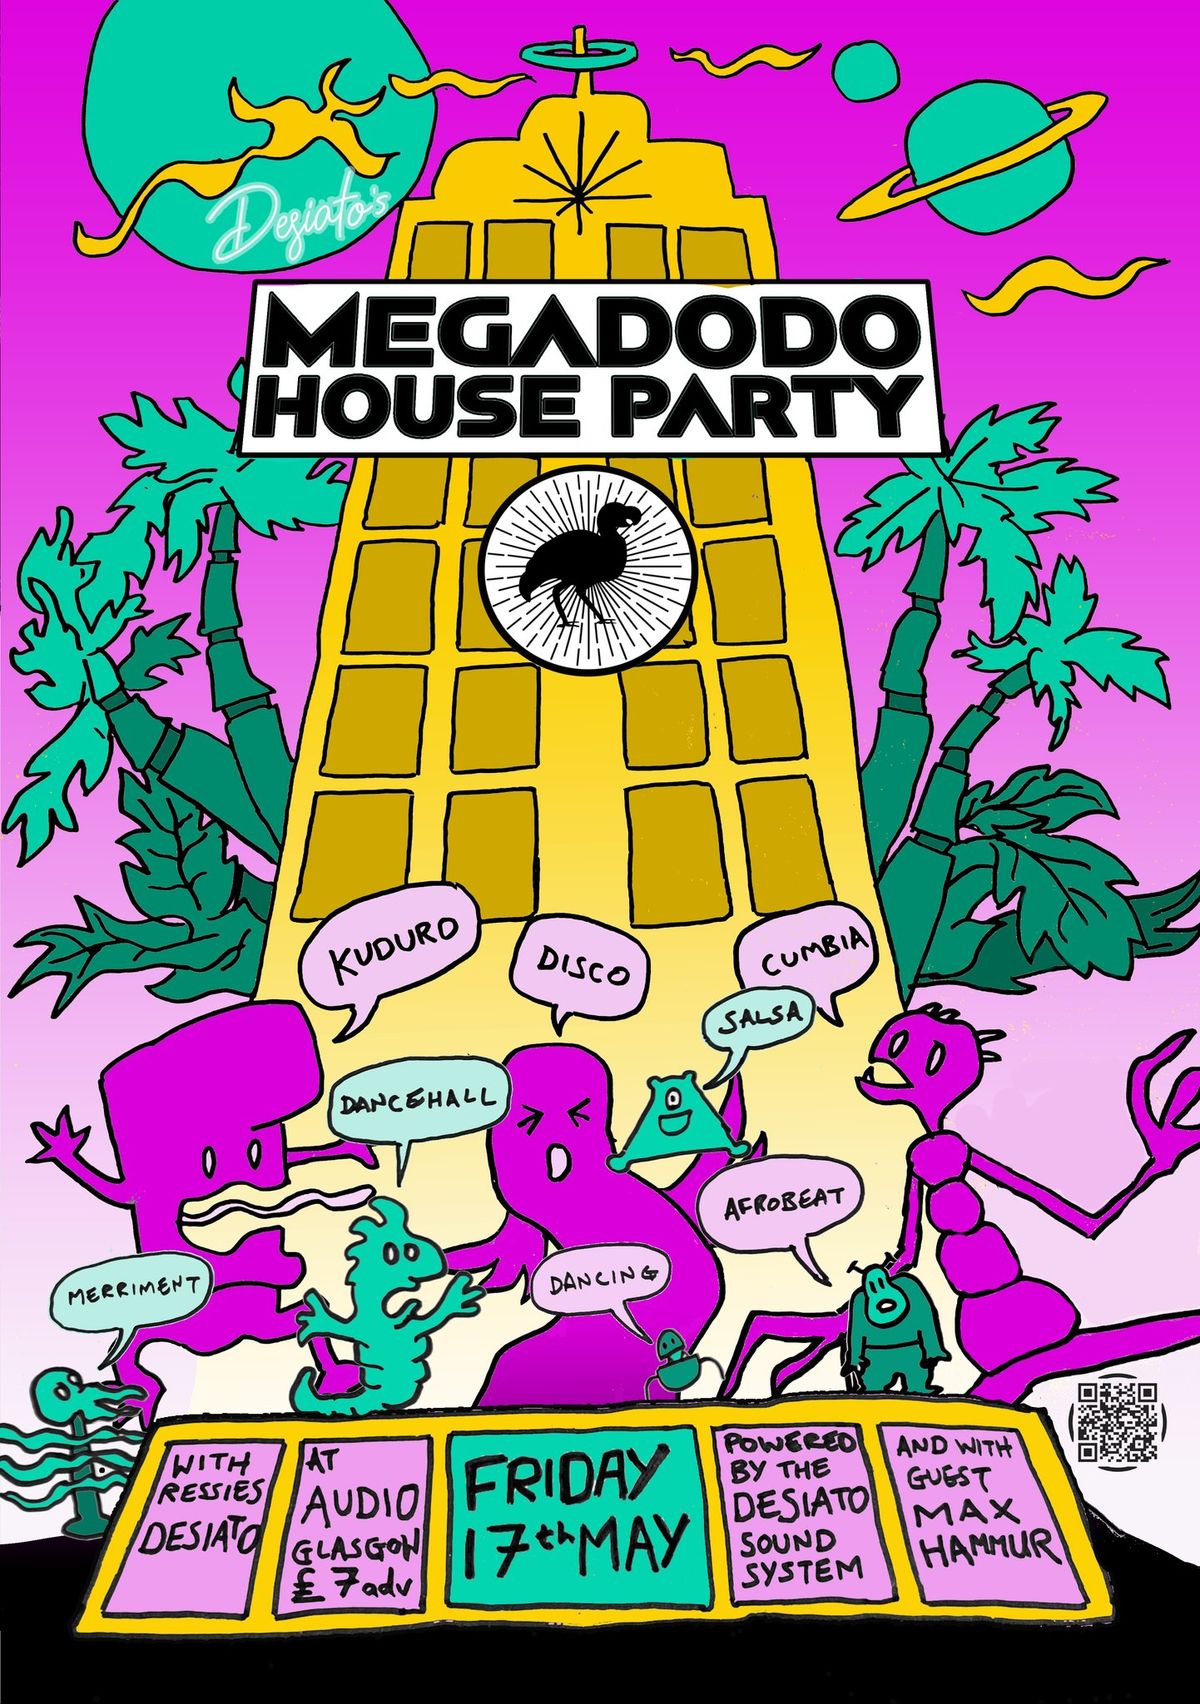 Megadodo House Party